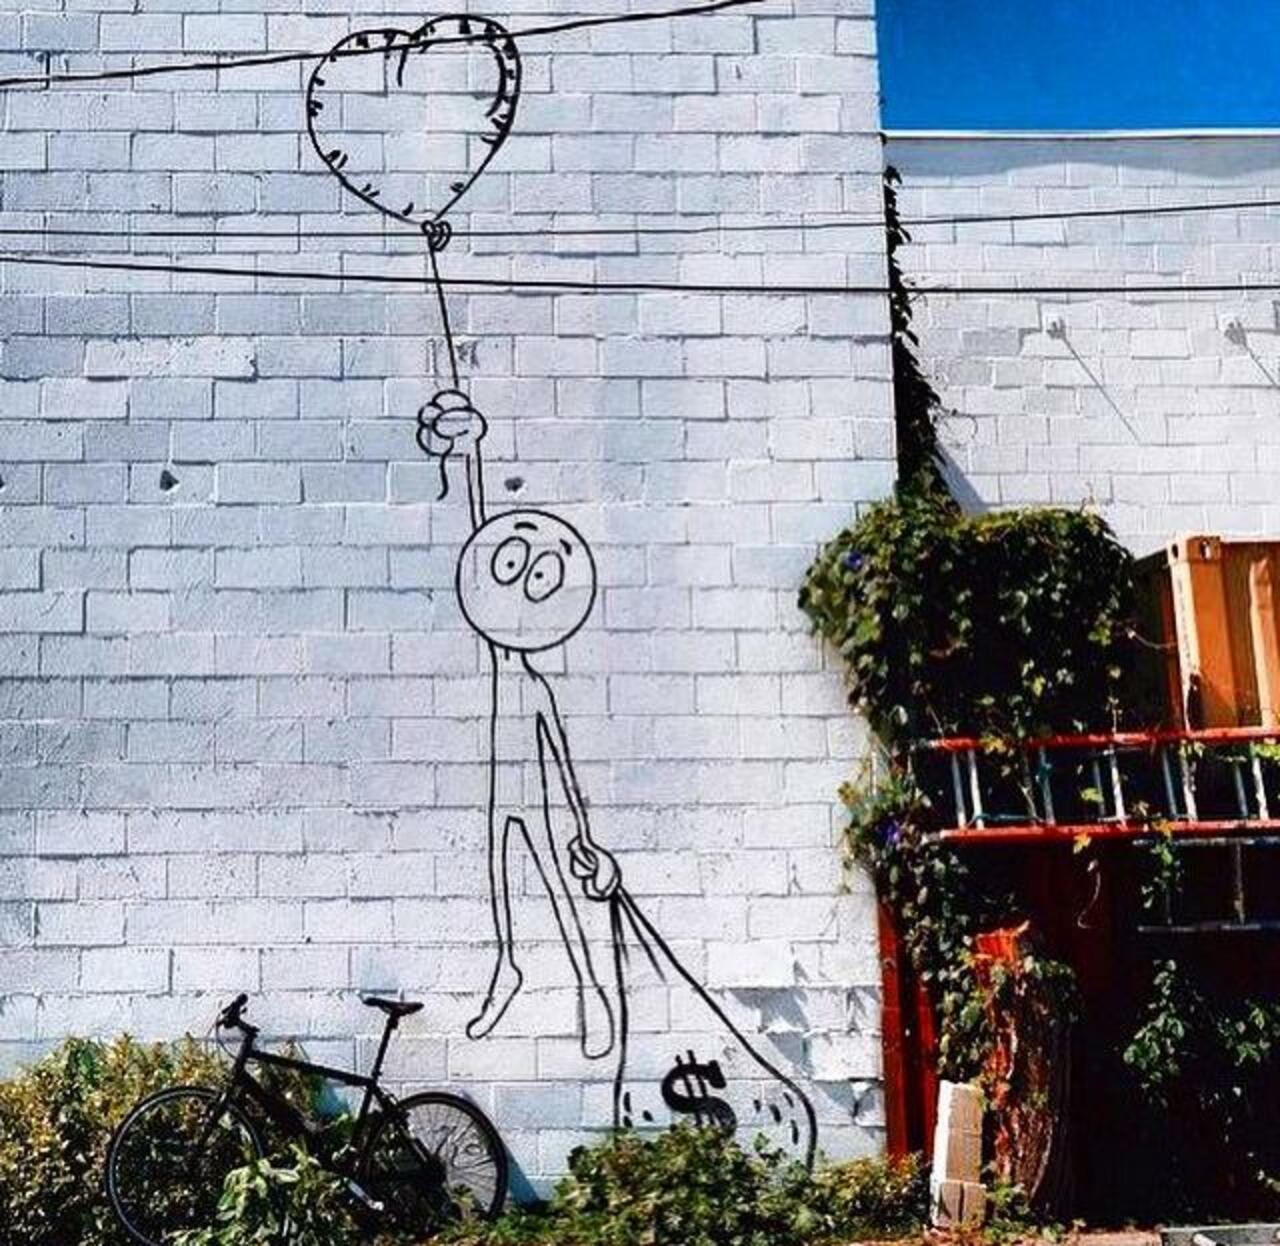 Love or money?
Street Art by Kaia Spire in LA 

#art #arte #graffiti #streetart http://t.co/nZ9lwO0bsg #creative #artwork #masterpiece #m…